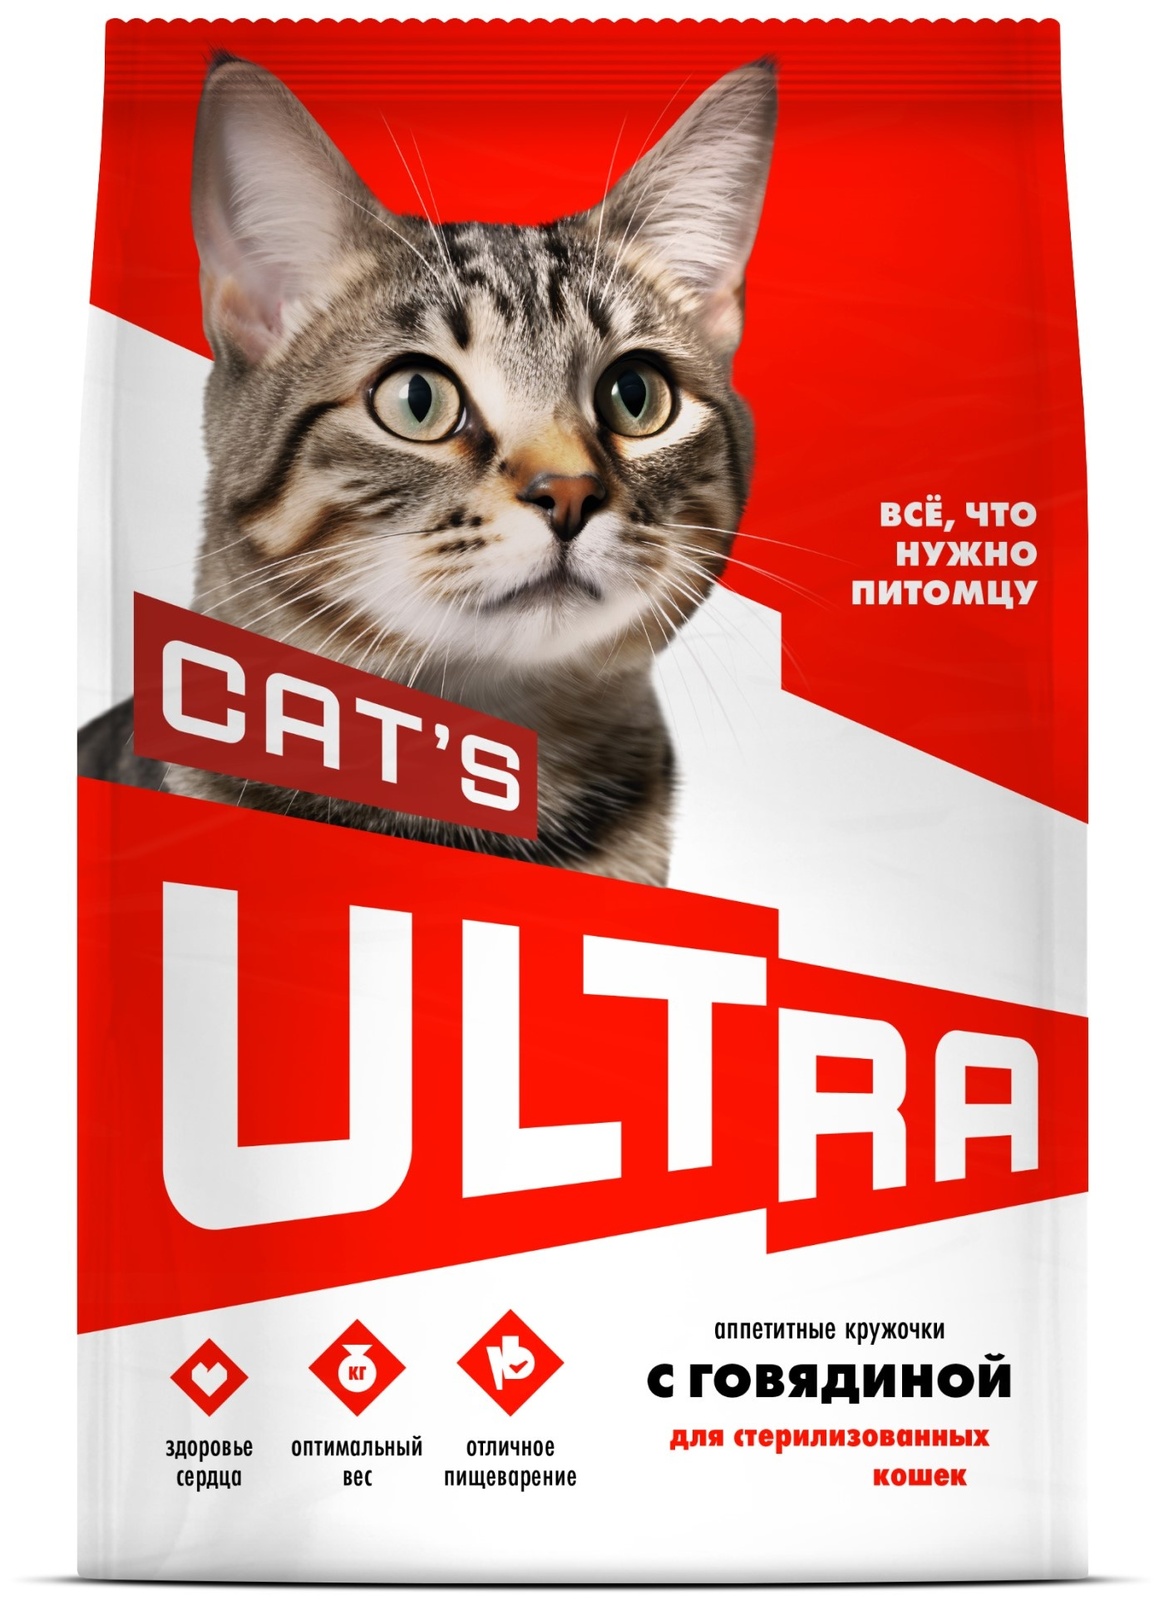 ULTRA ULTRA аппетитные кружочки с говядиной для стерилизованных кошек (1,5 кг) ultra ultra аппетитные кружочки 3 вида мяса для взрослых собак всех пород 3 кг